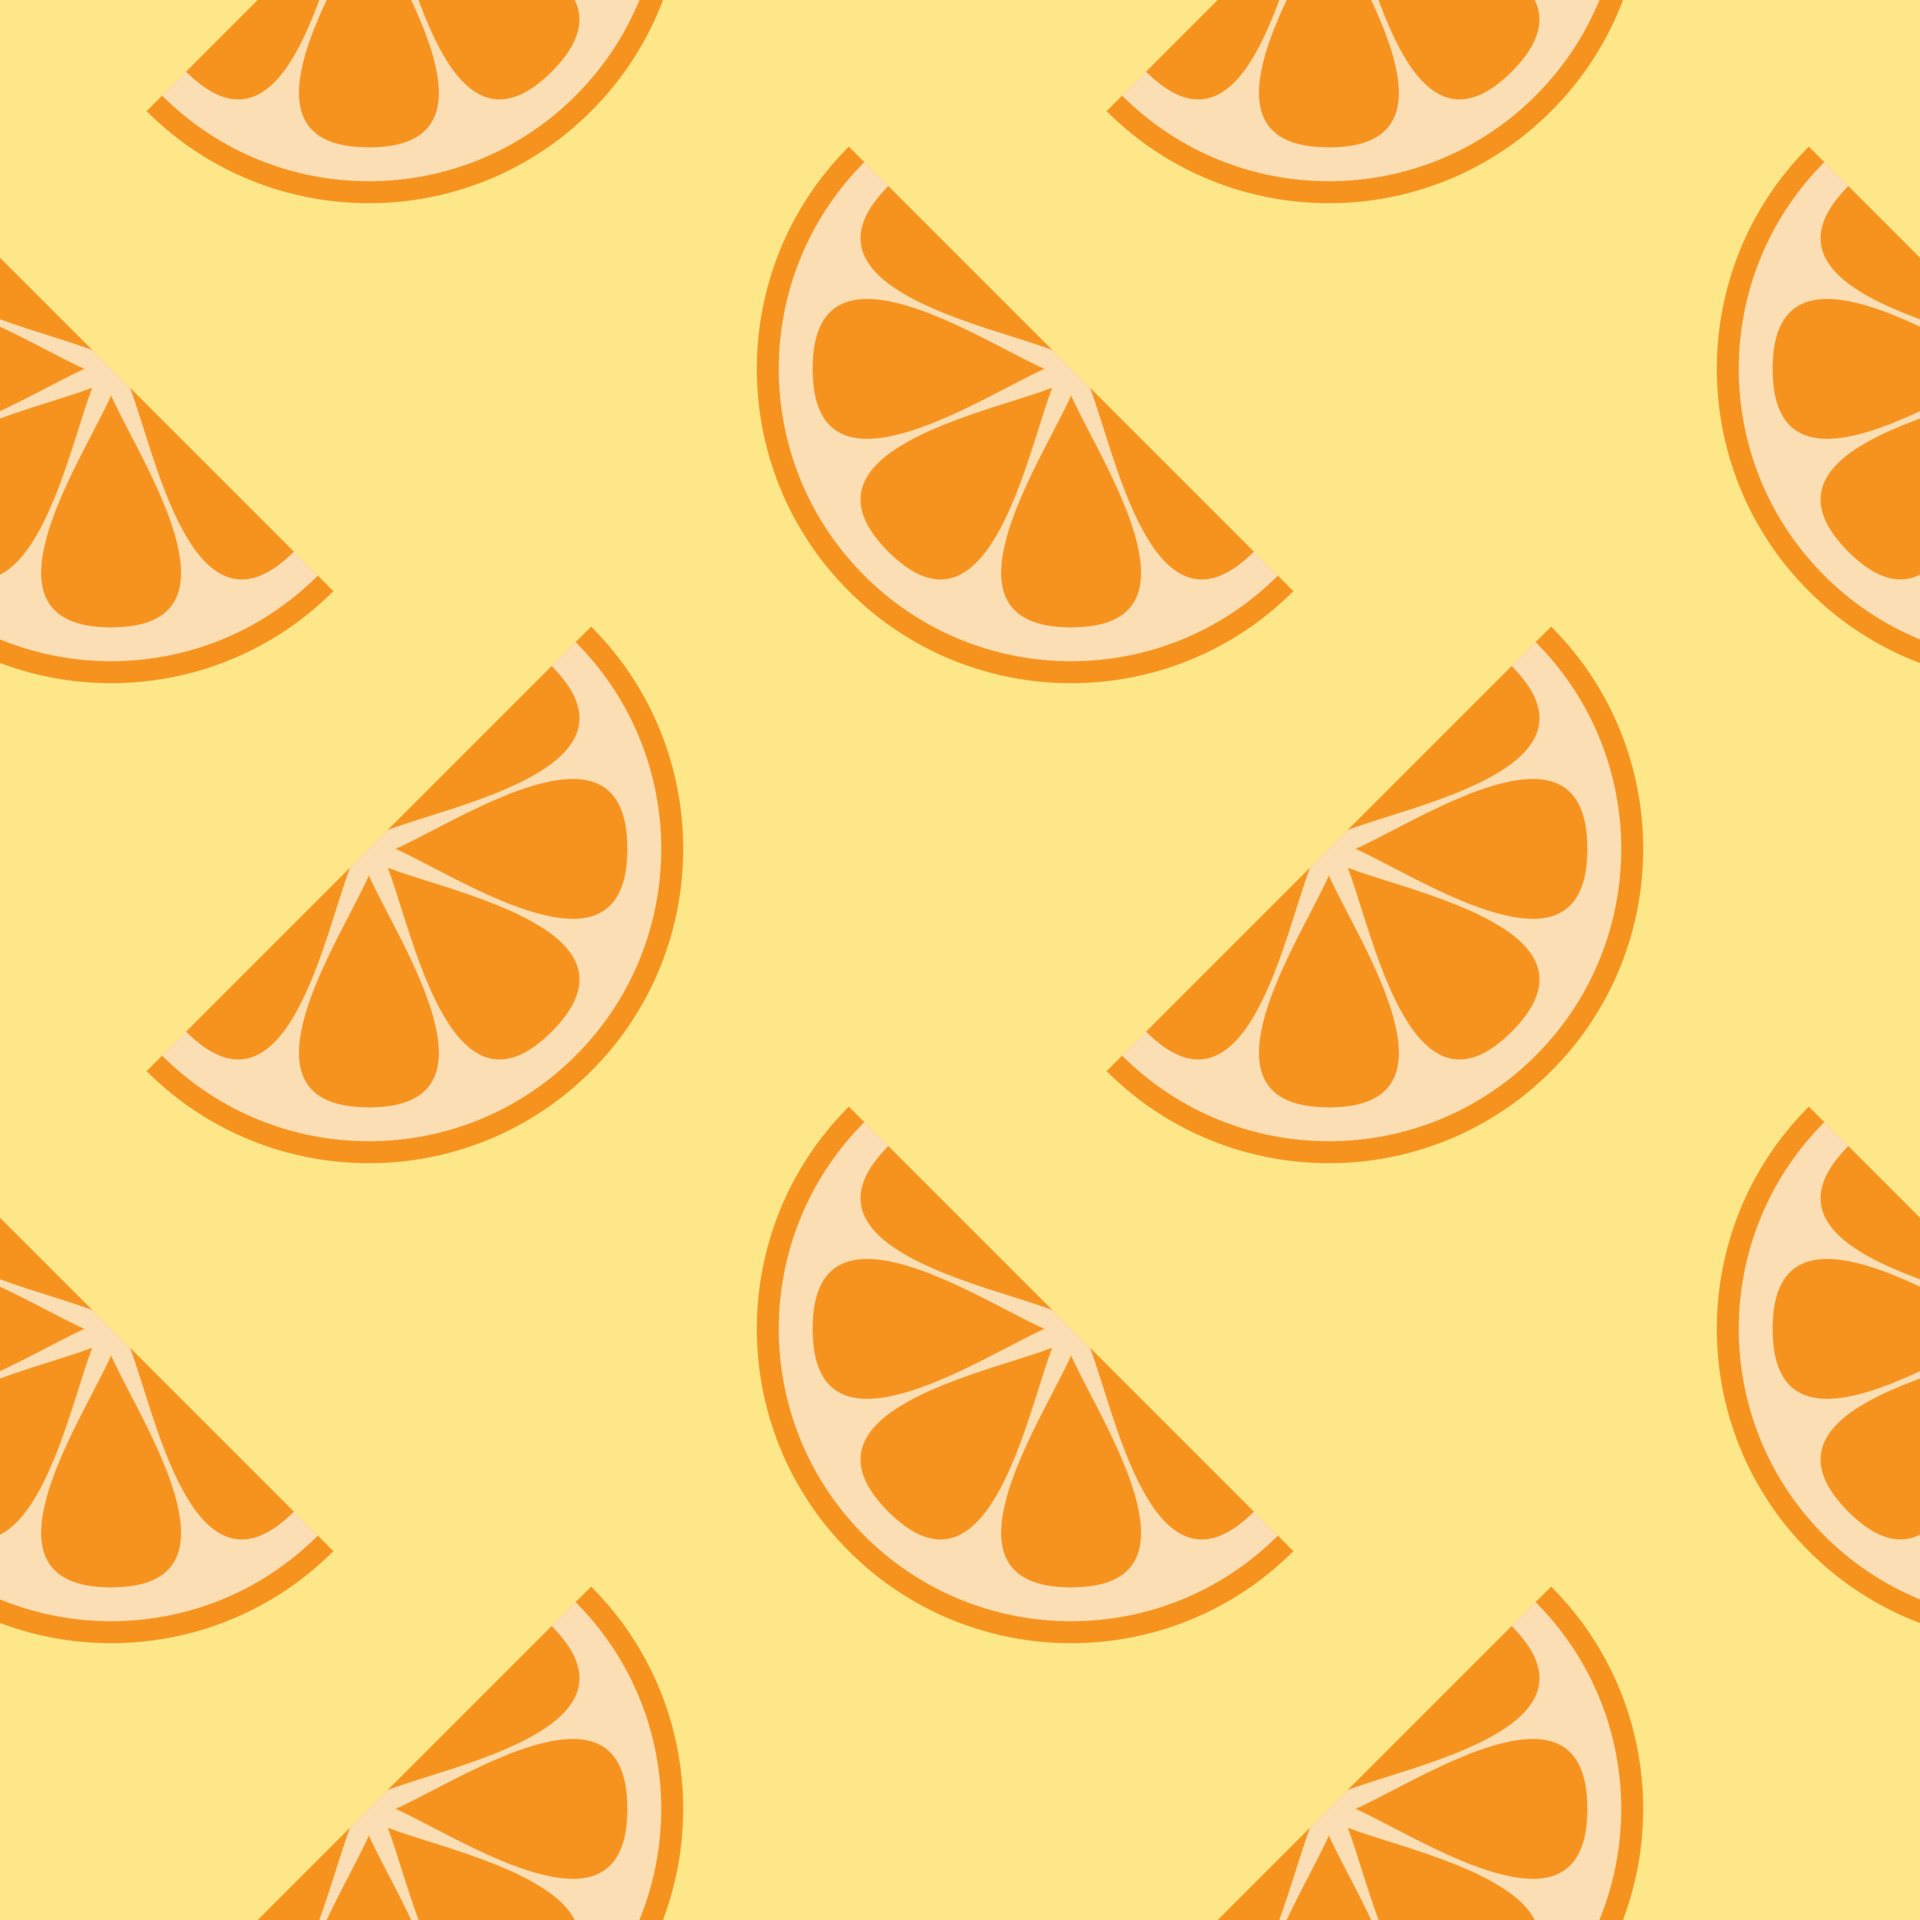 Trái cam là một loại trái cây tươi ngon và đầy dinh dưỡng. Bạn có muốn thưởng thức nó một cách khác biệt? Khám phá các bức ảnh đầy trải nghiệm mới về các loại trái cam trên trang cá nhân của chúng tôi. Từ những tấm hình đầy màu sắc, bạn sẽ nhận được nhiều thông tin thú vị về sự khác biệt giữa các loại trái cam.